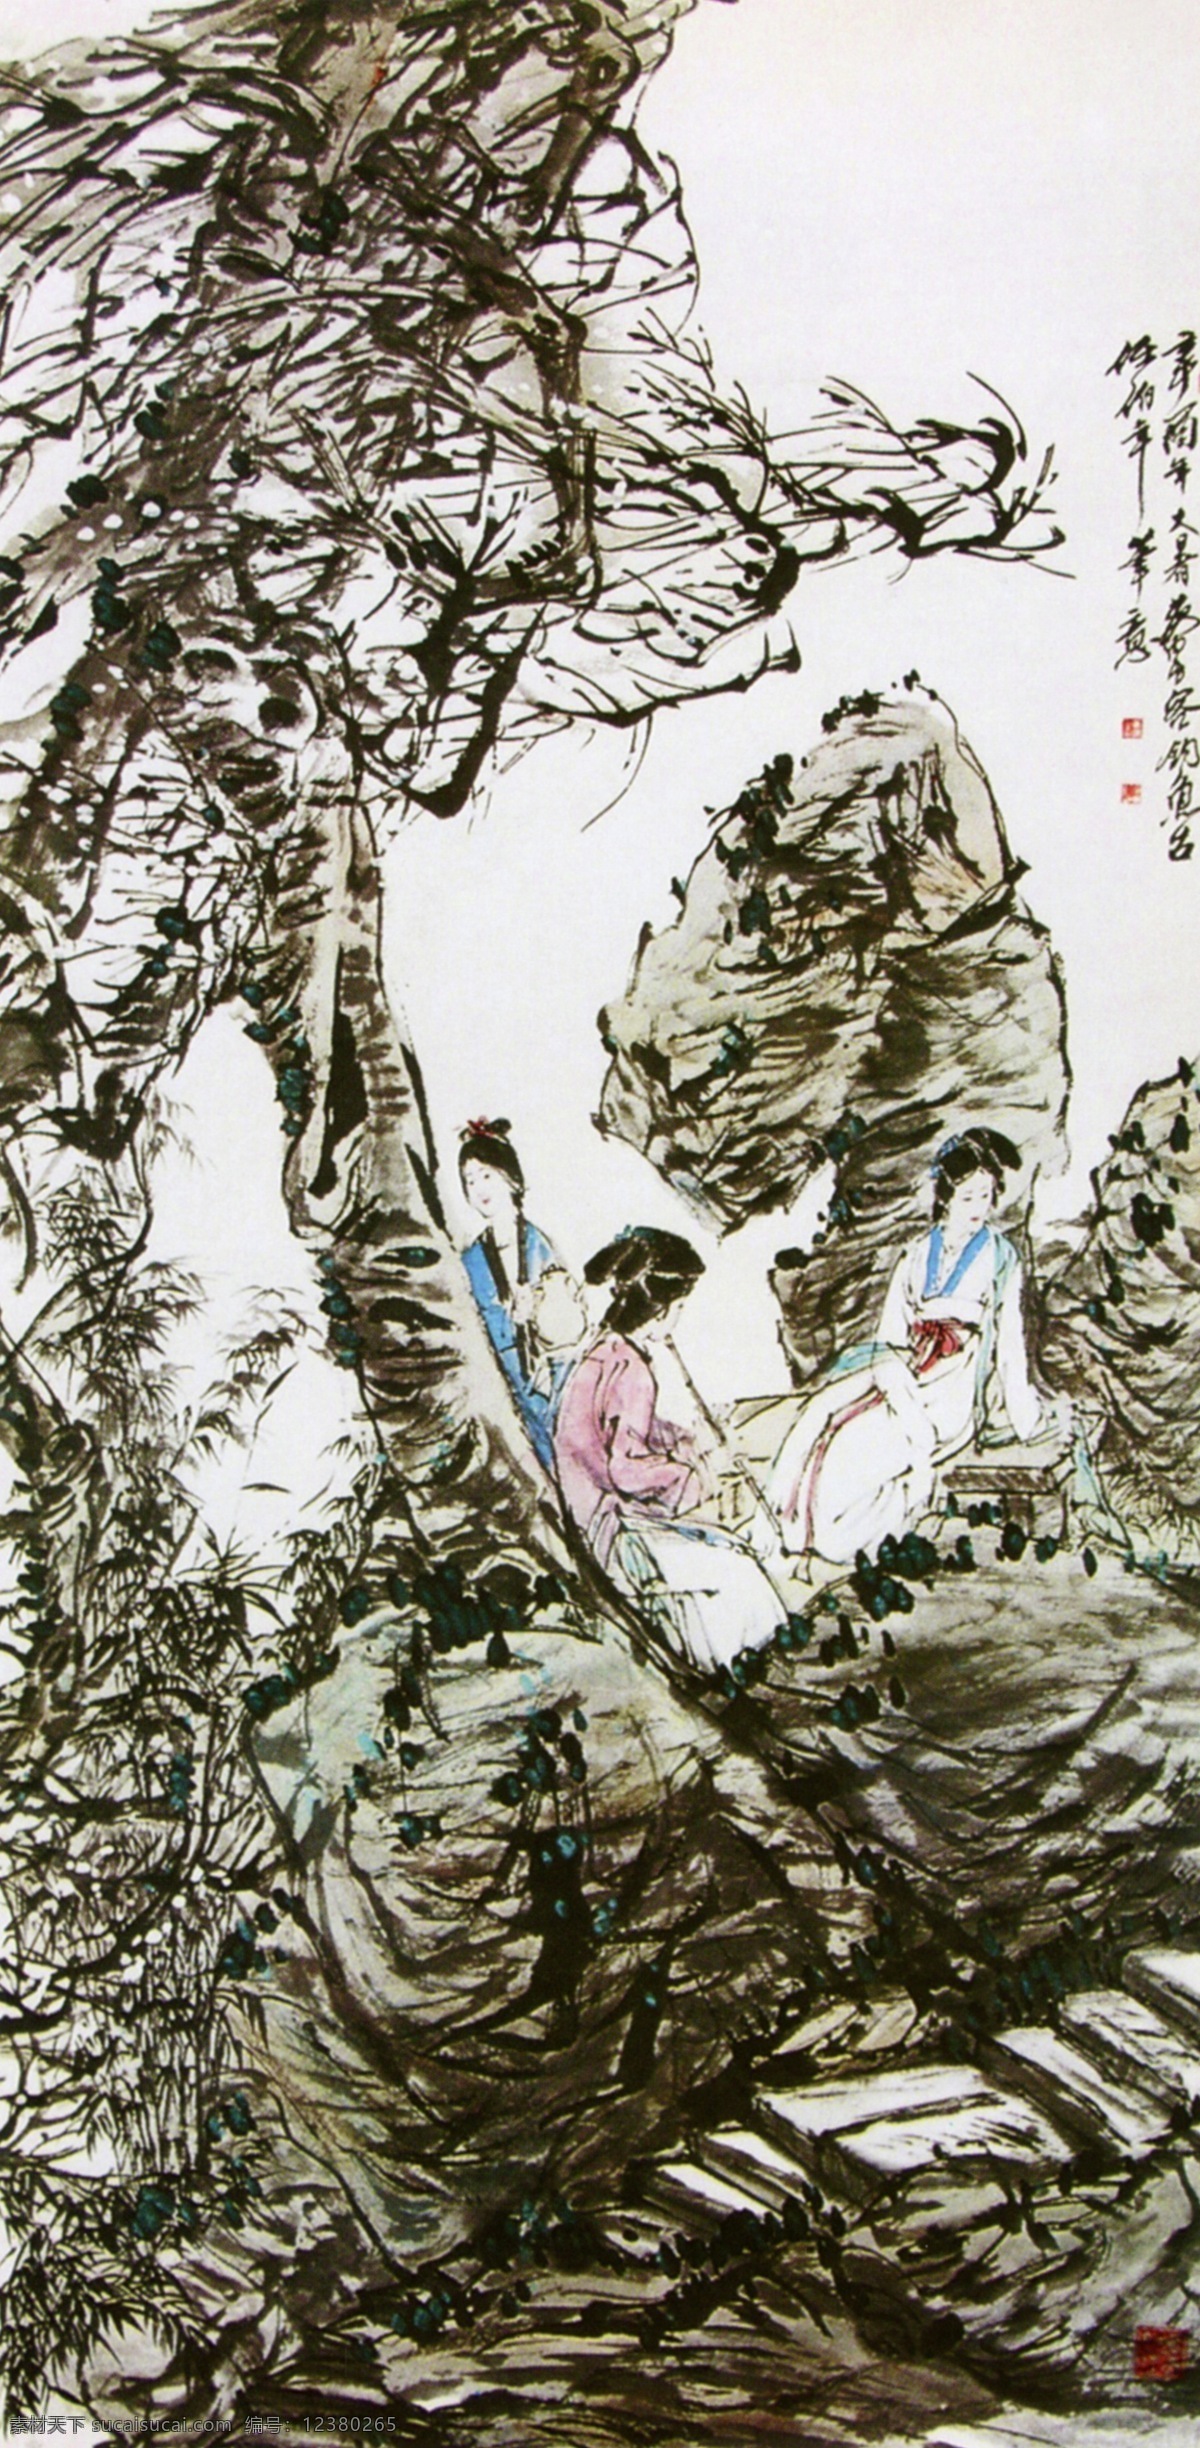 吹 萧 仕女 传世名画 绘画作品 摄影图片 书画 水墨画 文化艺术 中国传统文化 传世名画素材